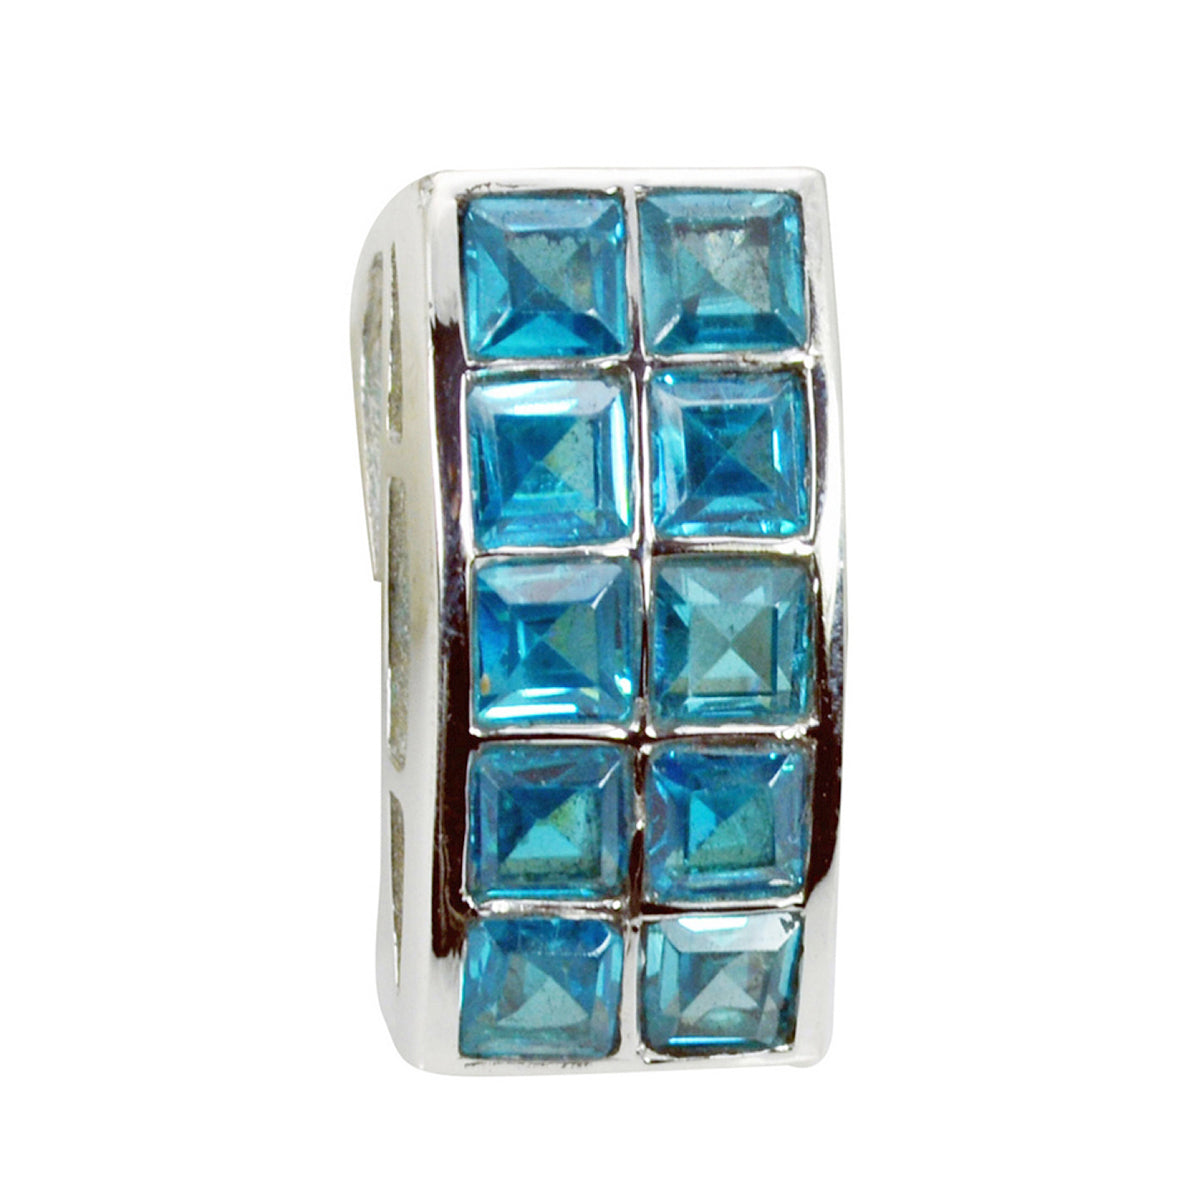 Riyo magnifiques pierres précieuses carré à facettes bleu topaze bleue pendentif en argent massif cadeau pour mariage